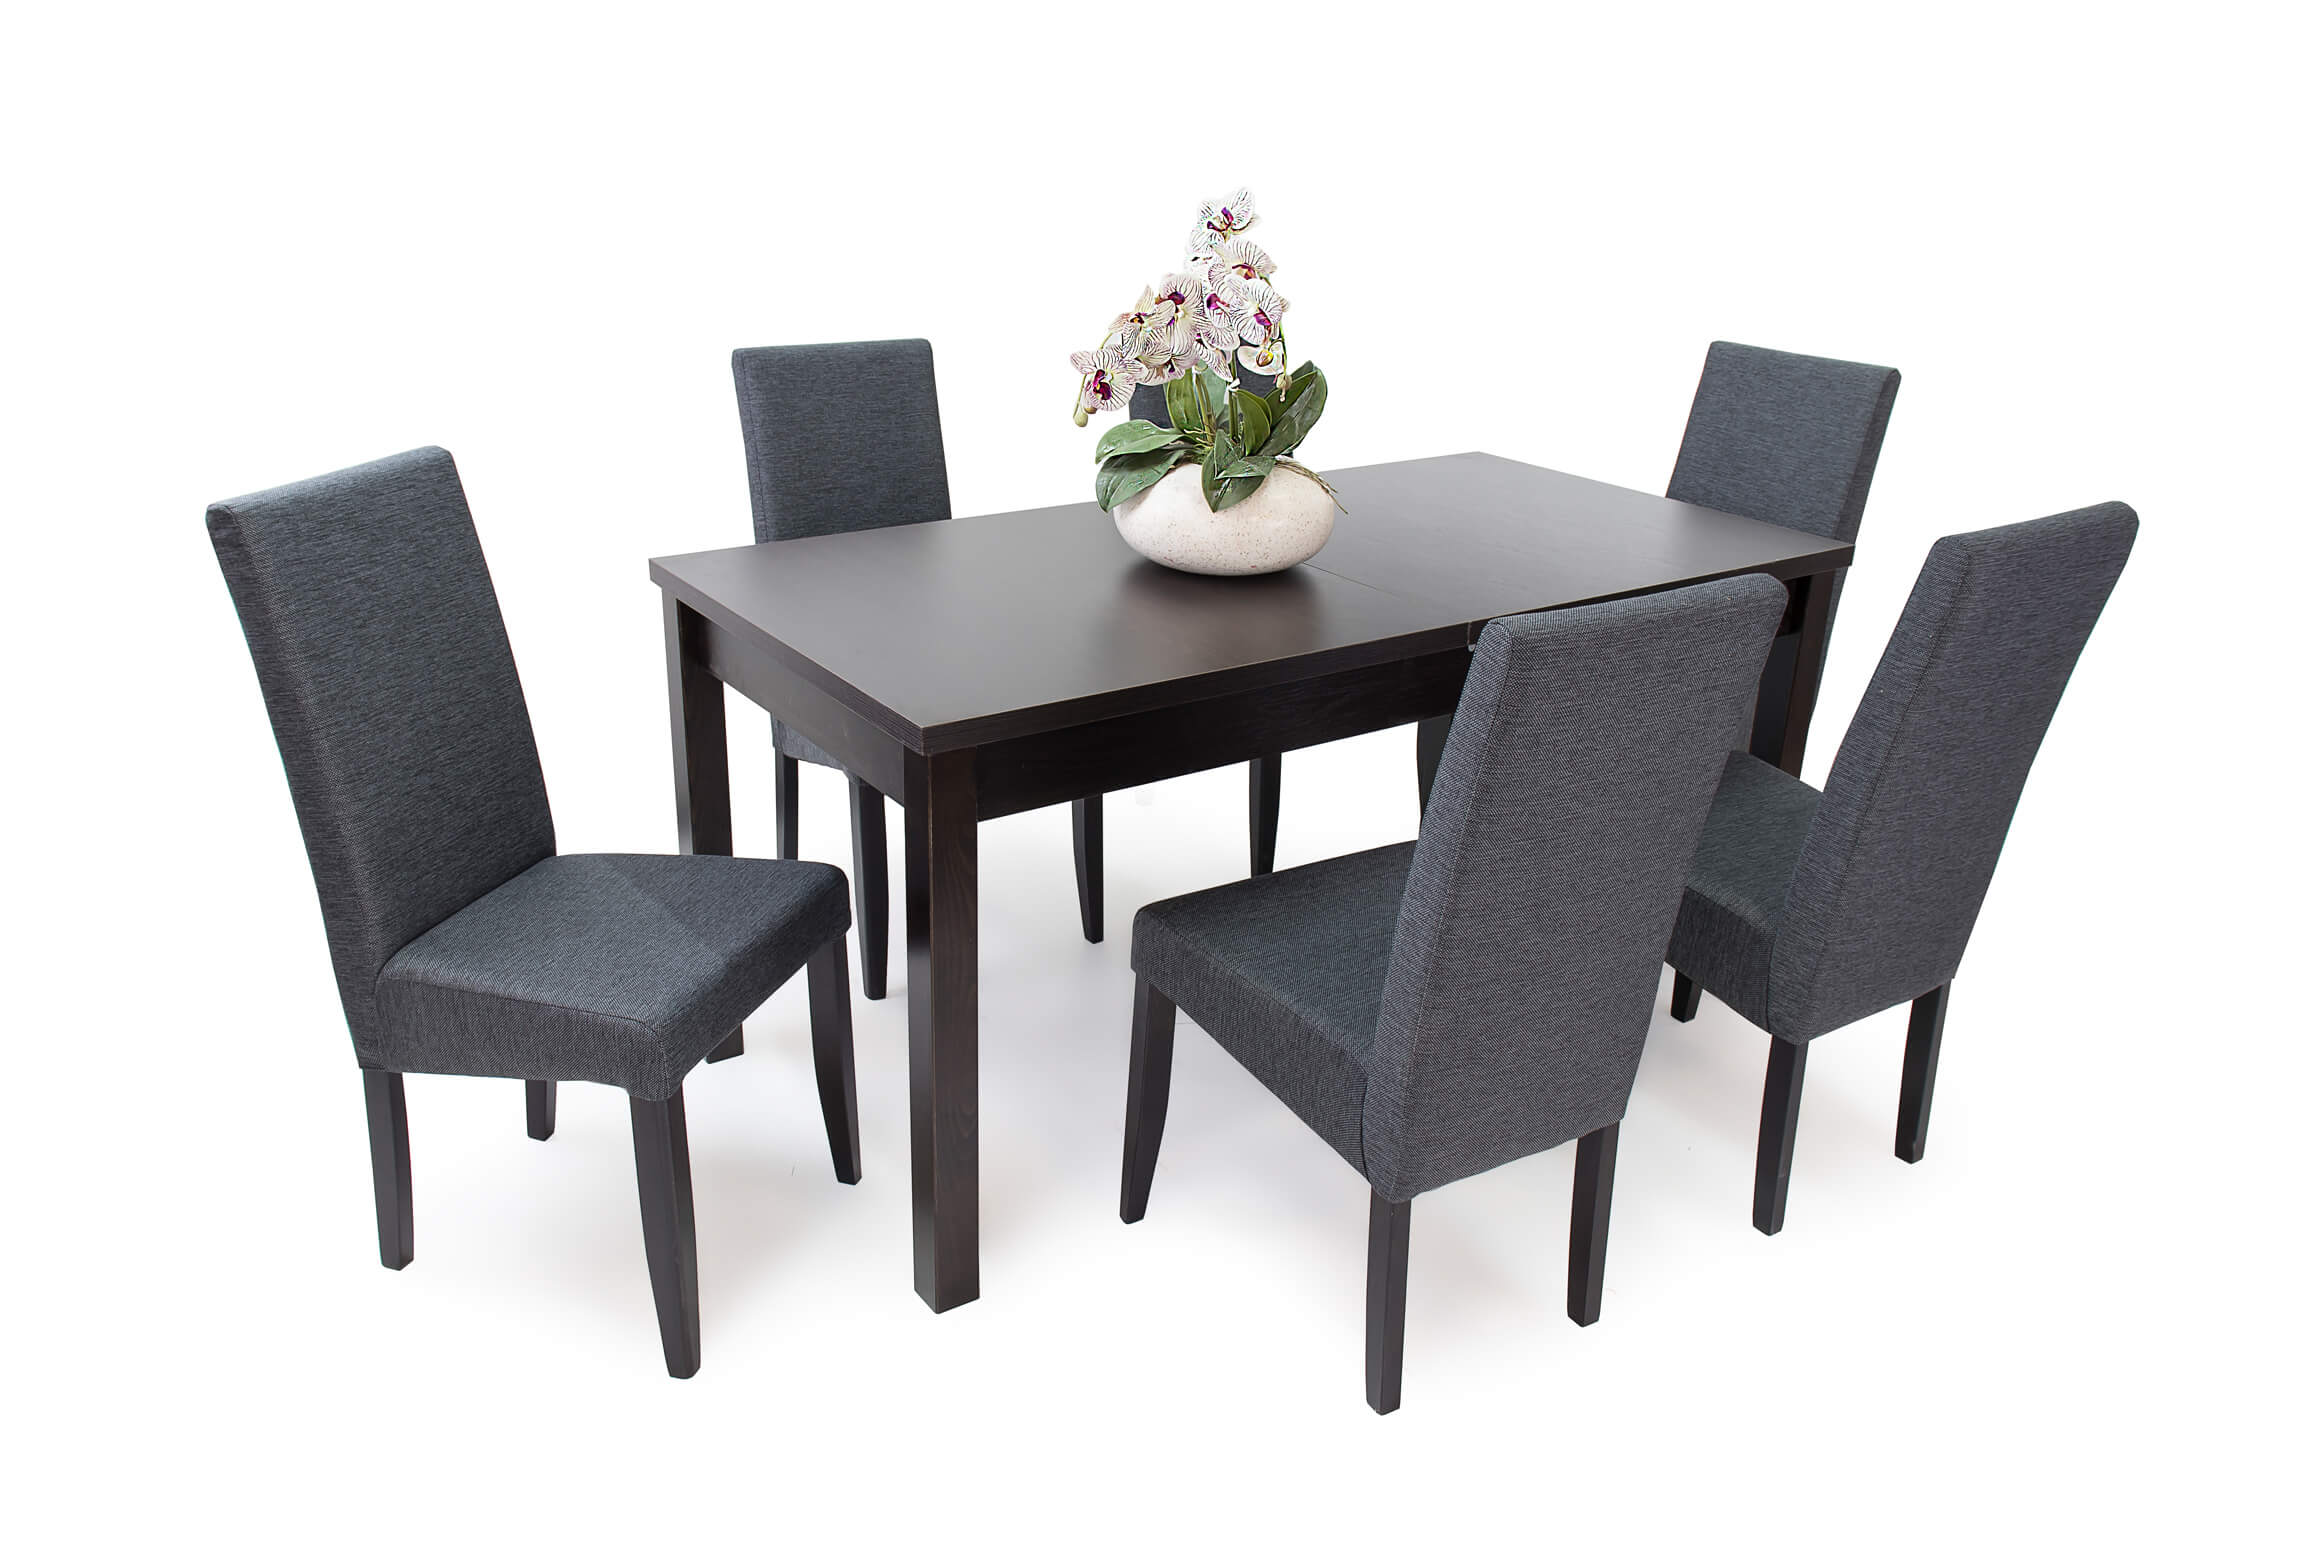 Tony asztal Berta lux székekkel | 6 személyes étkezőgarnitúra